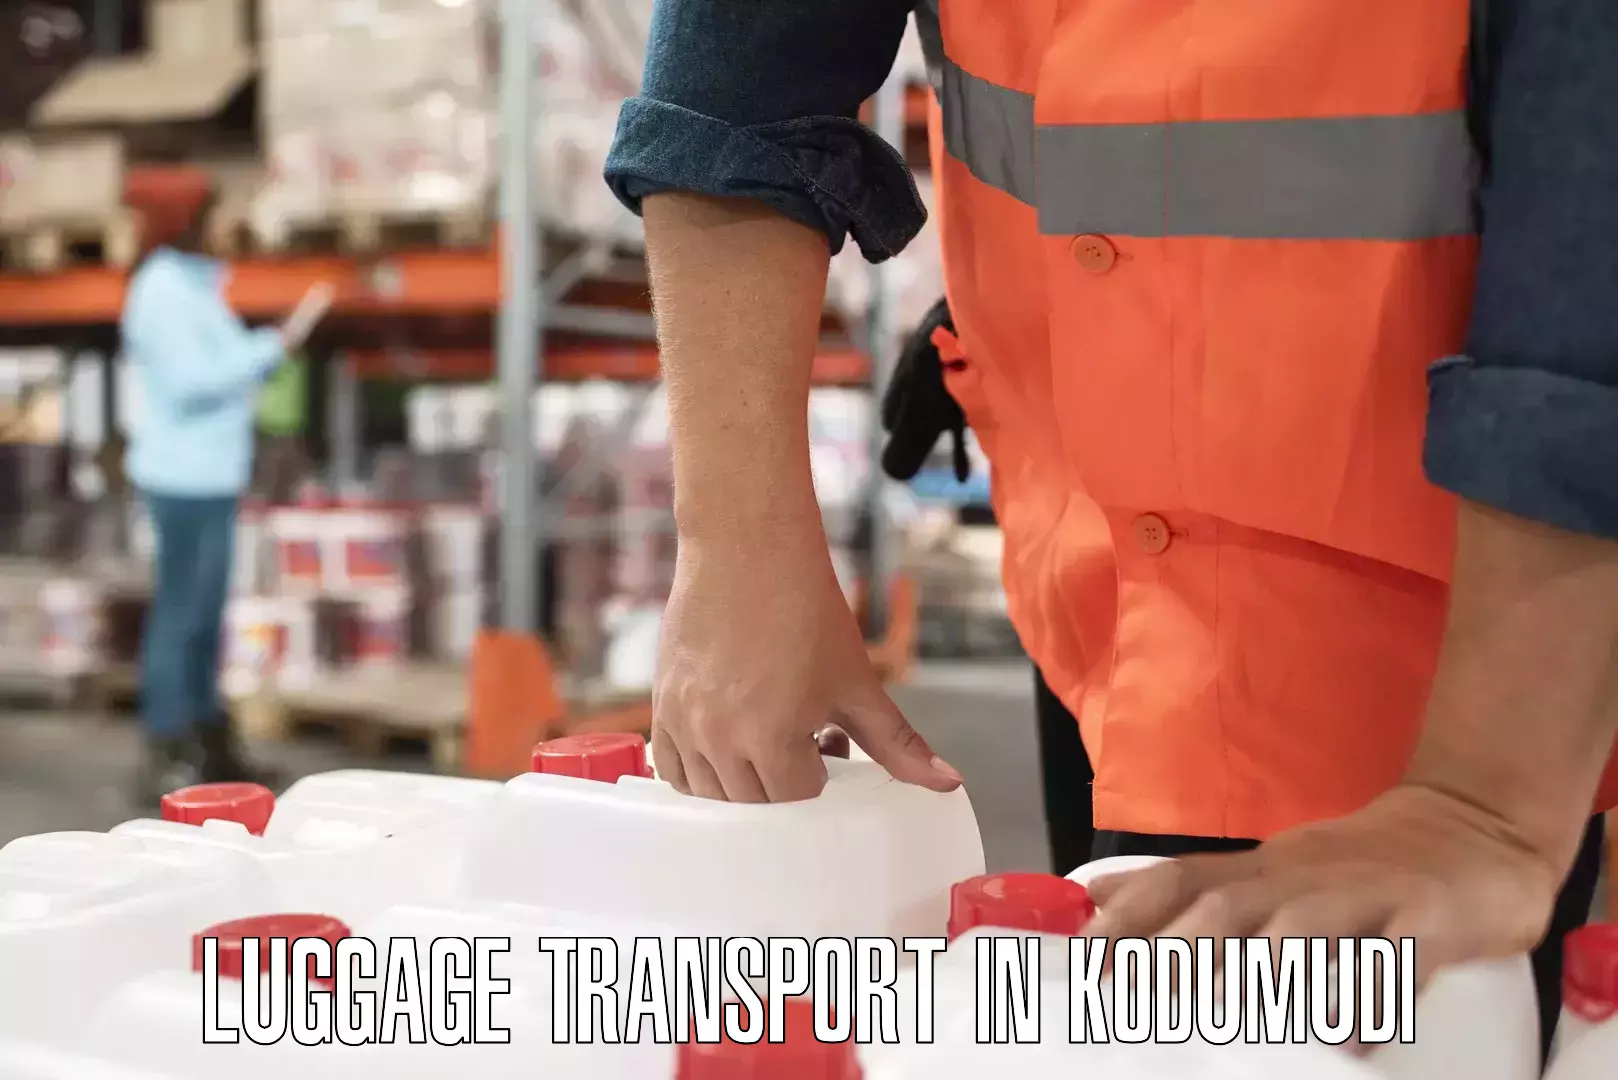 Weekend baggage shipping in Kodumudi